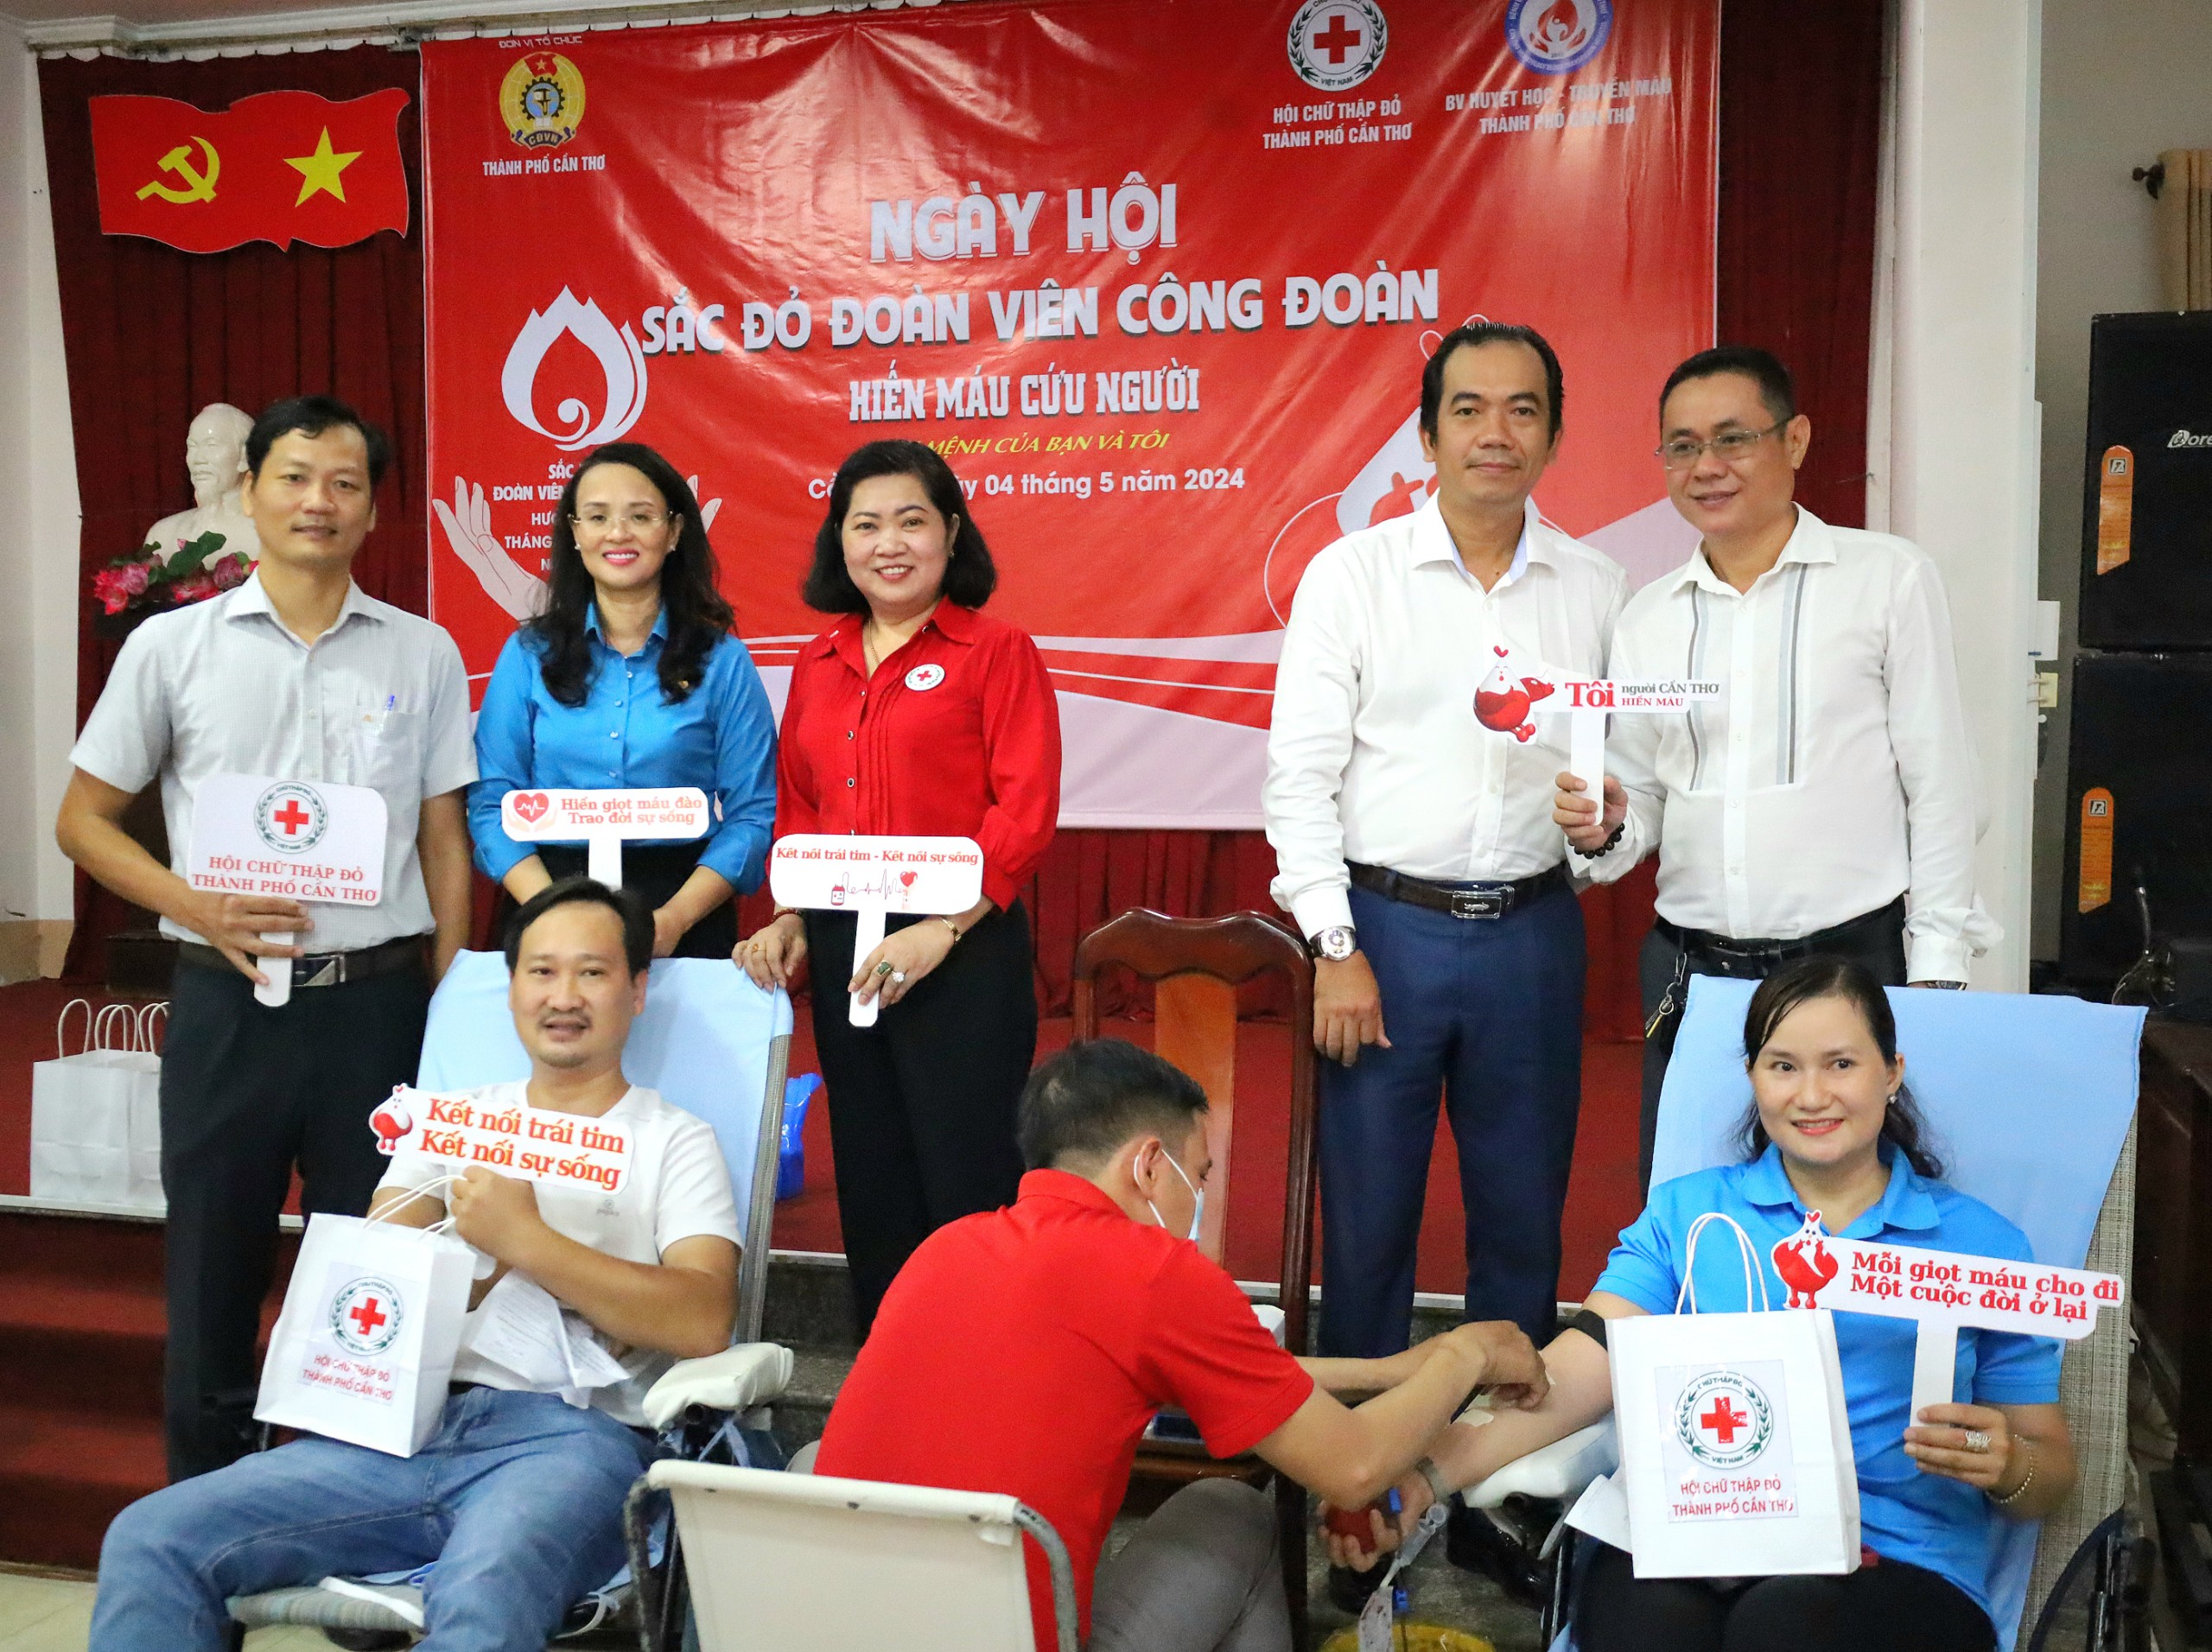 Các đại biểu tặng quà cho Đoàn viên công đoàn tham gia hiến máu.